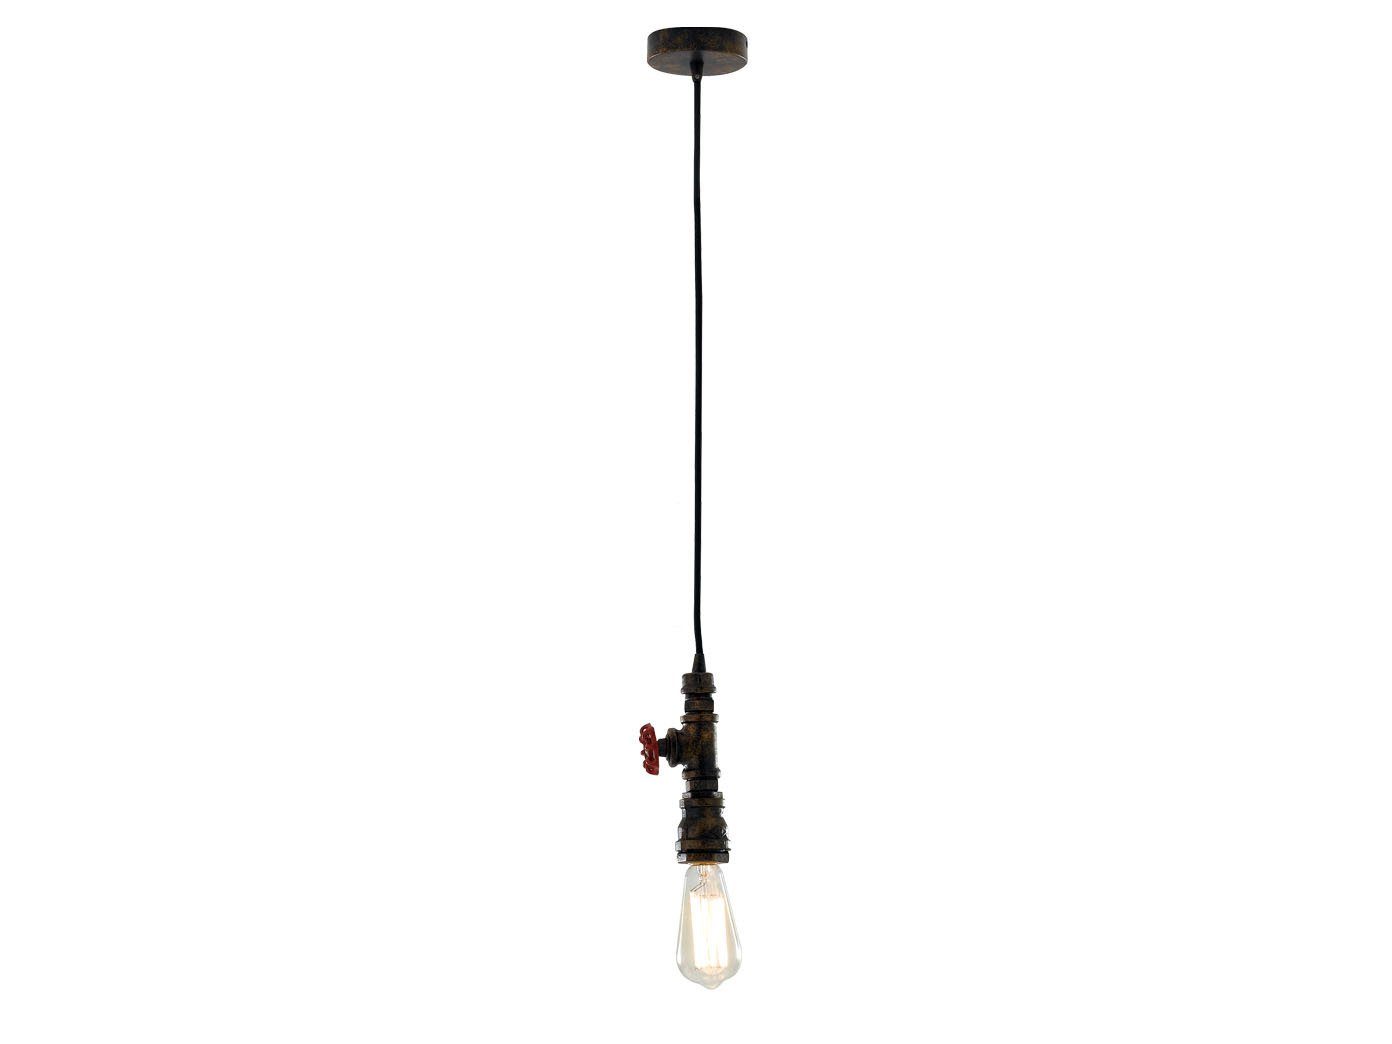 warmweiß, 120cm Lampe rost LED klein-e hängend, über antik Industrie-design wechselbar, LUCE Rohr Rost Esstisch Pendelleuchte, LED Design